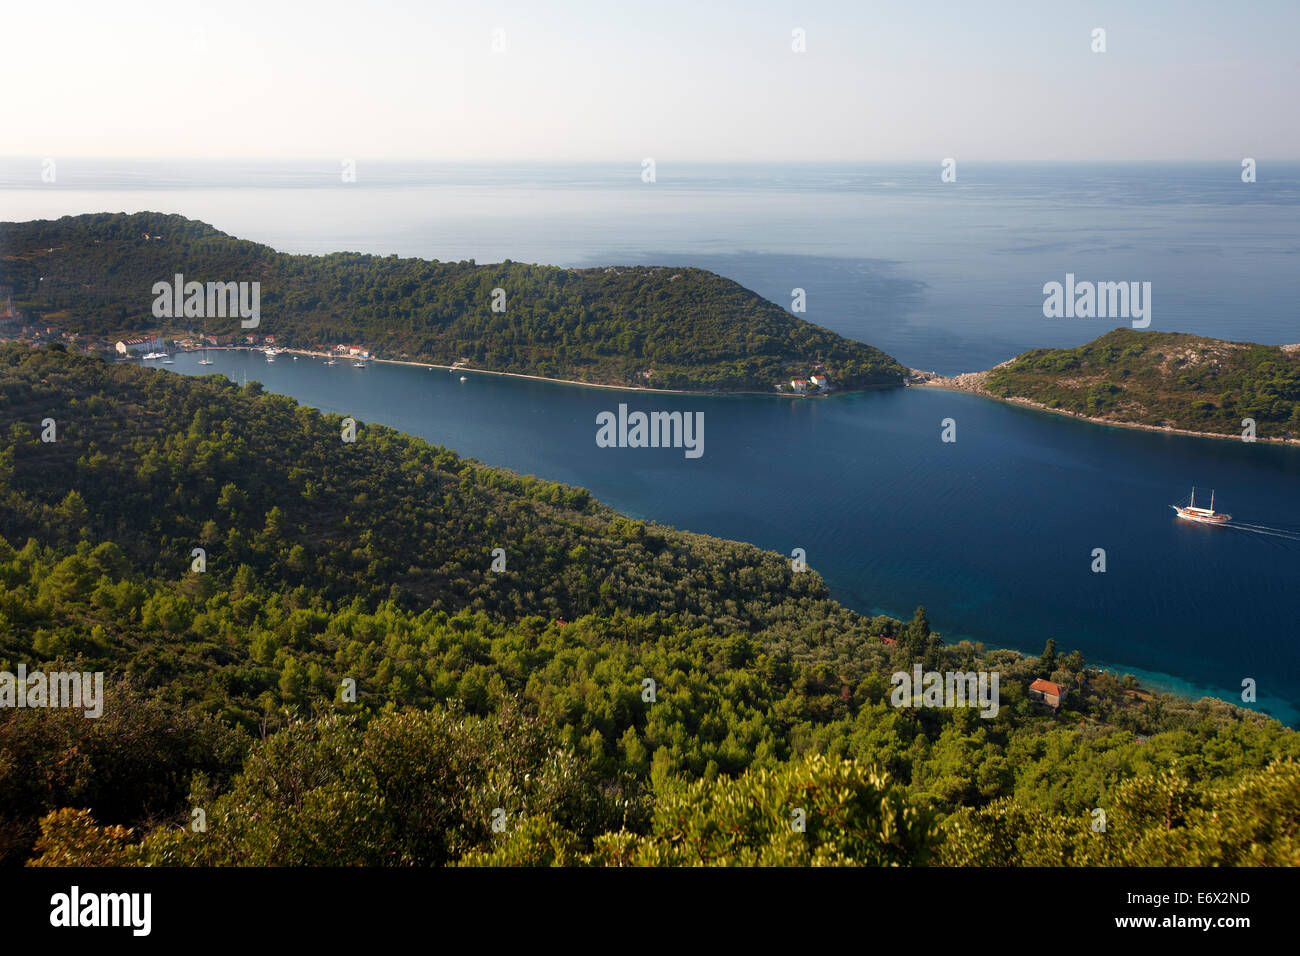 Vistas a las islas Elaphiti, Sipanska Luka, Sipan isla, al noroeste de Dubrovnik, Croacia Foto de stock